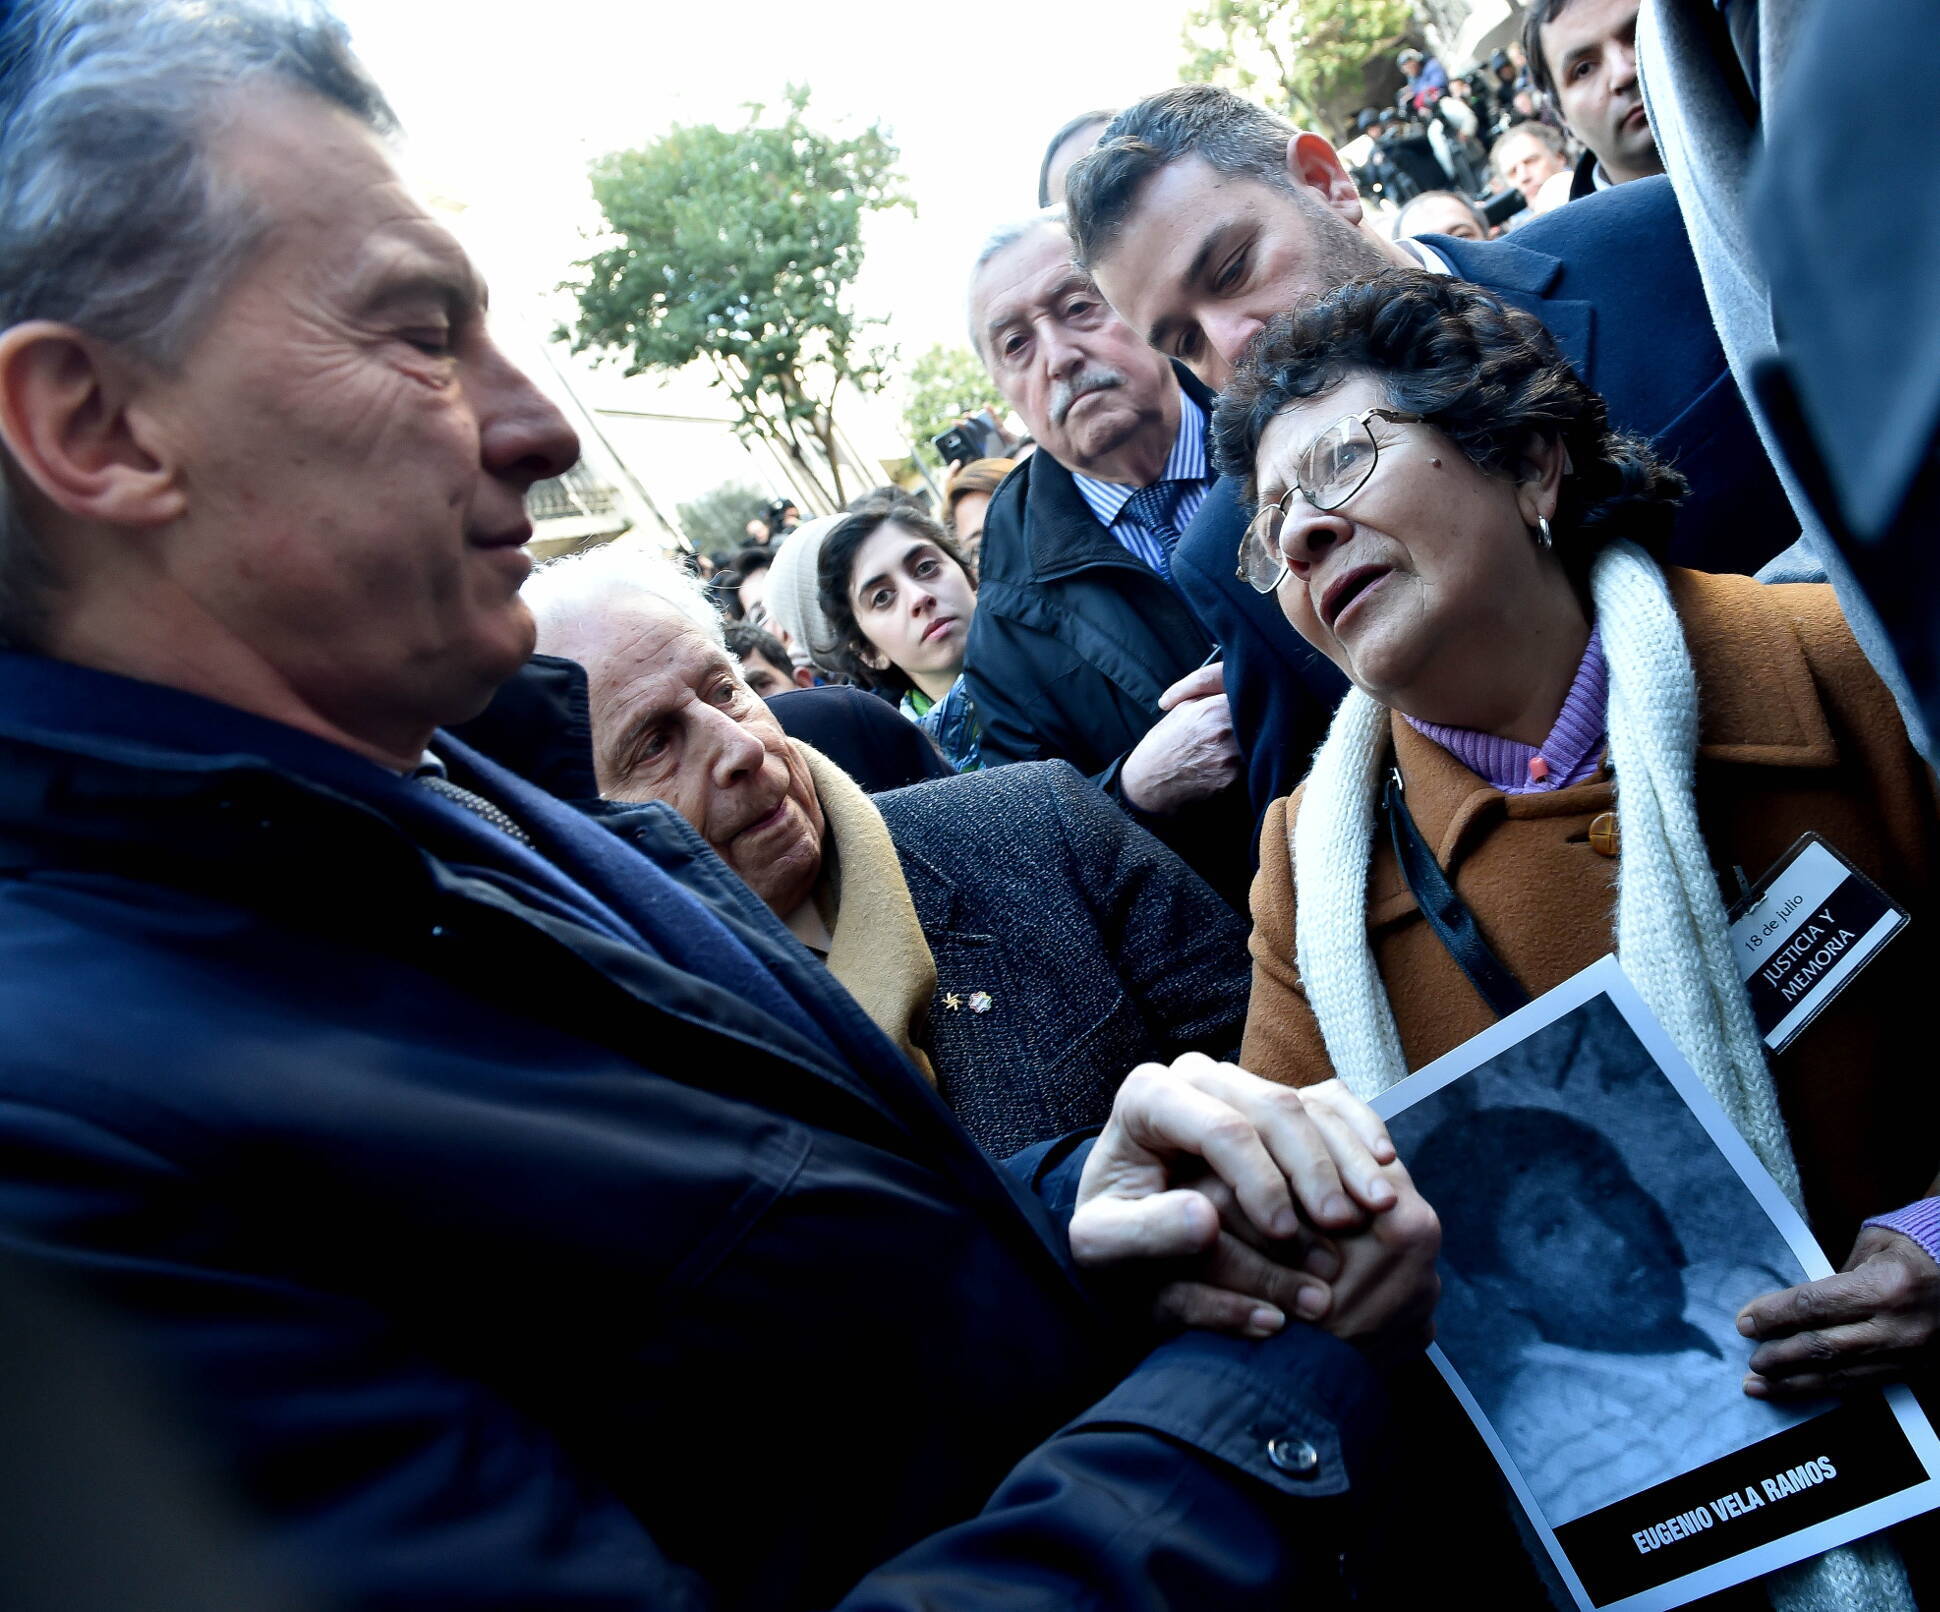 El presidente Macri participó del acto por el aniversario del atentado a la AMIA